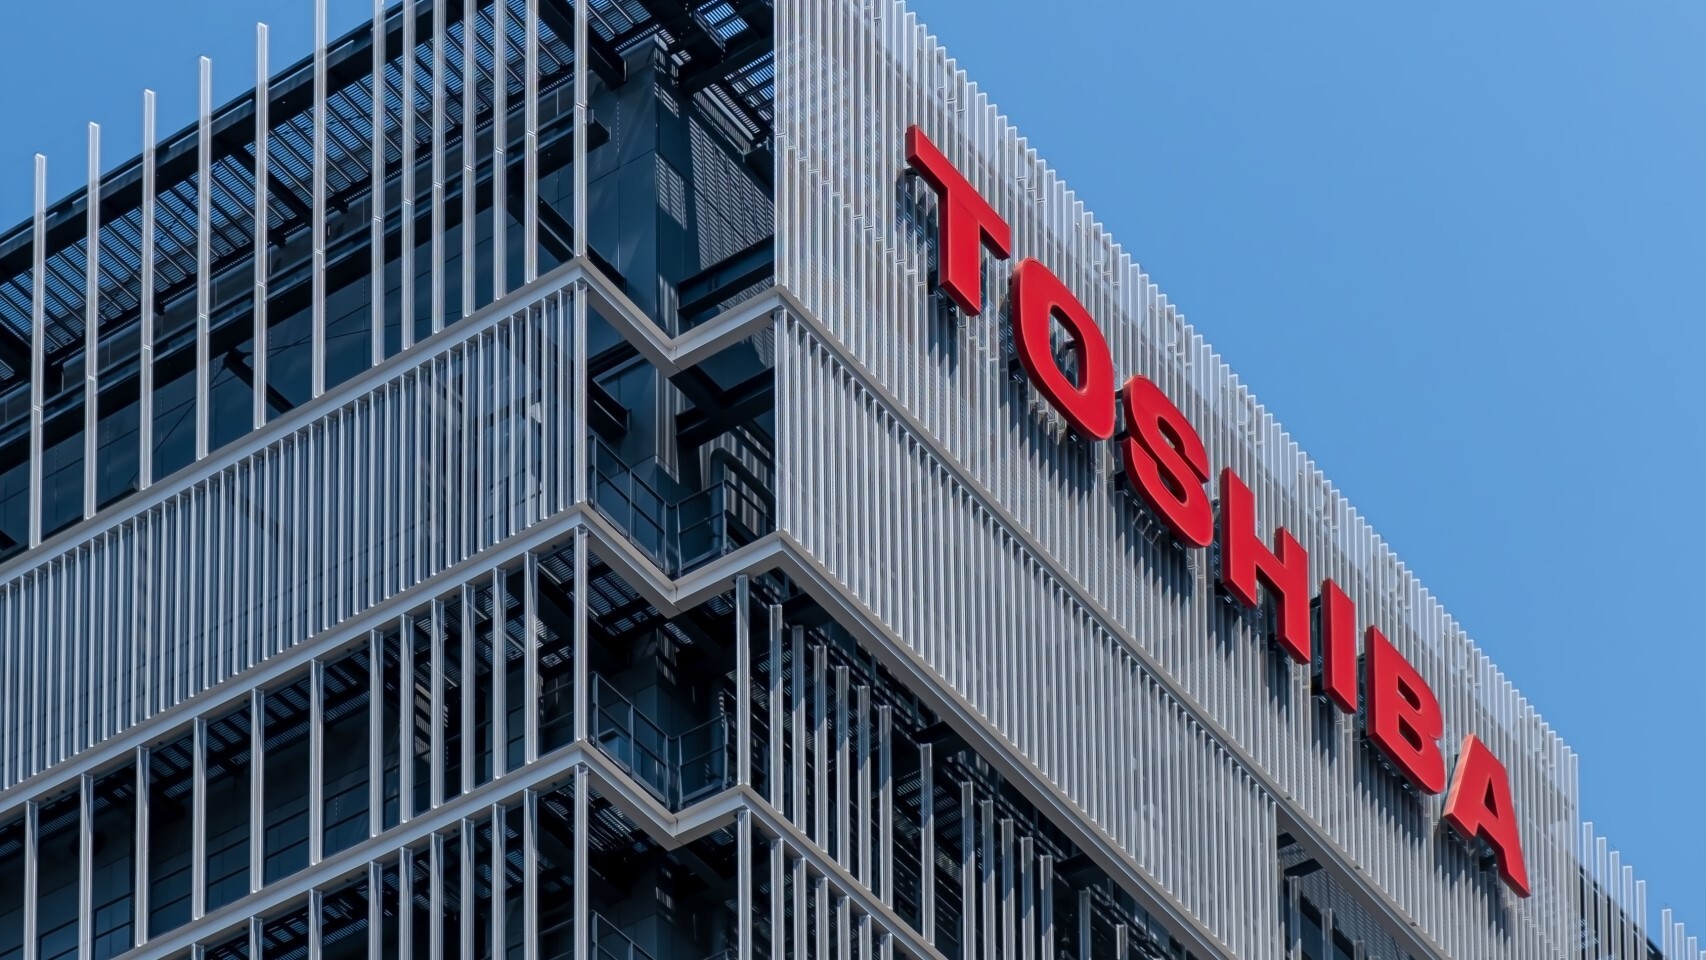 Edificio Toshiba